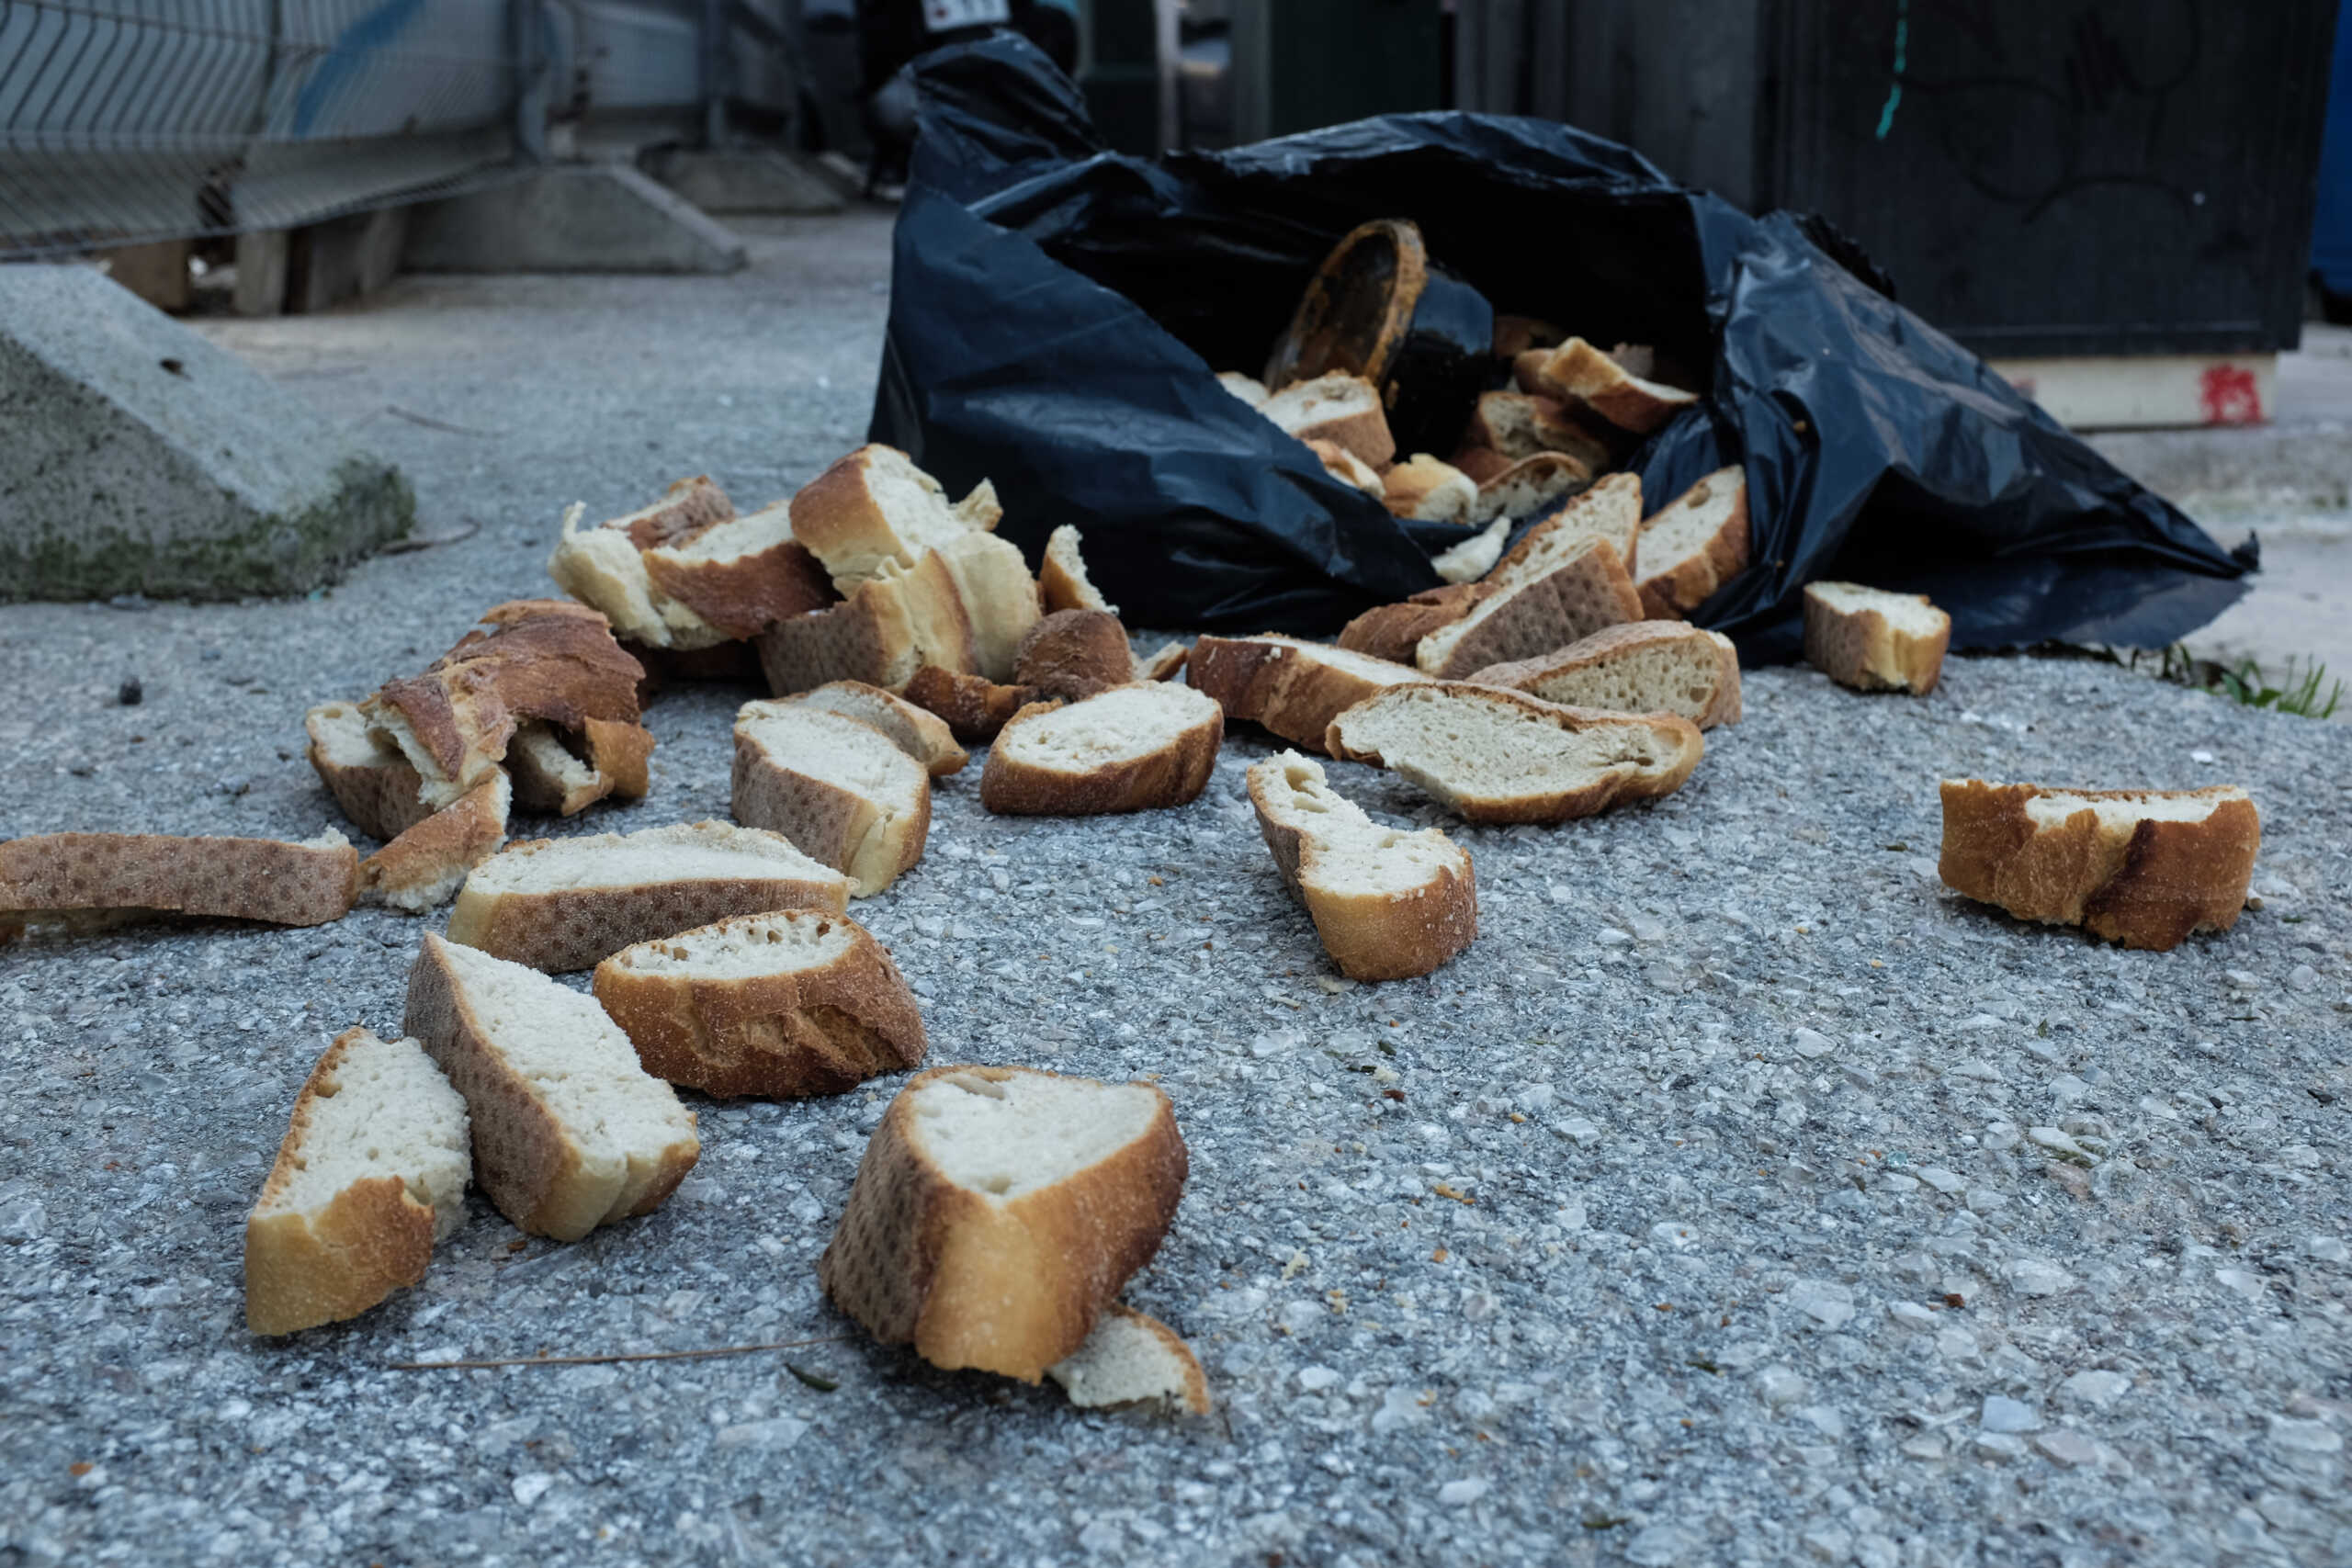 Ιαπωνία: Ψωμί με υπολείμματα αρουραίου, αποσύρονται χιλιάδες συσκευασίες